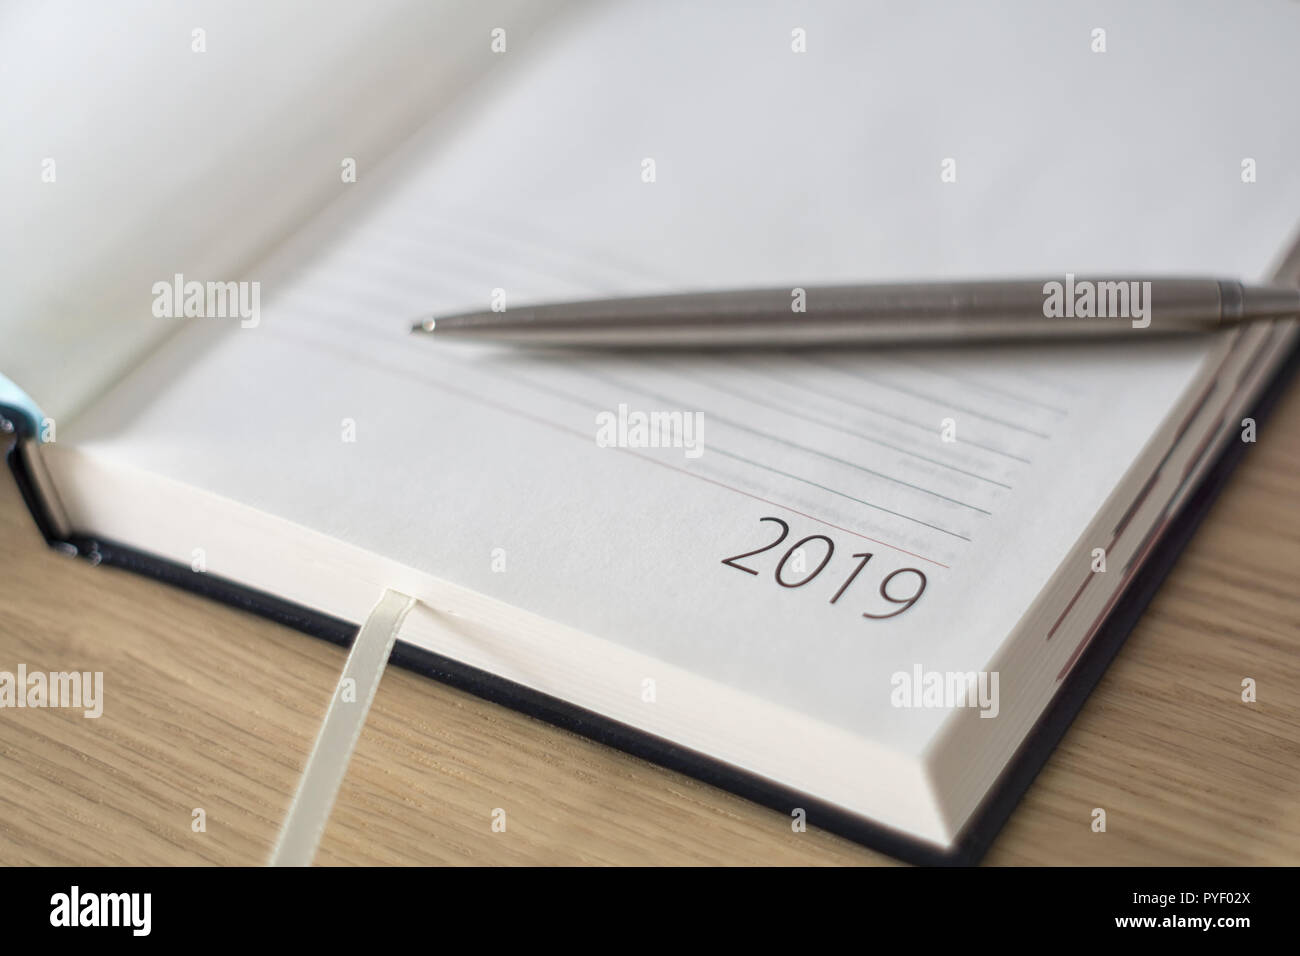 Anno Nuovo 2019 office organizer Calendario, smartphone, bicchieri e sliver penna a sfera sulla scrivania in legno. Immagine con copia spazio. Messa a fuoco selettiva. Foto Stock